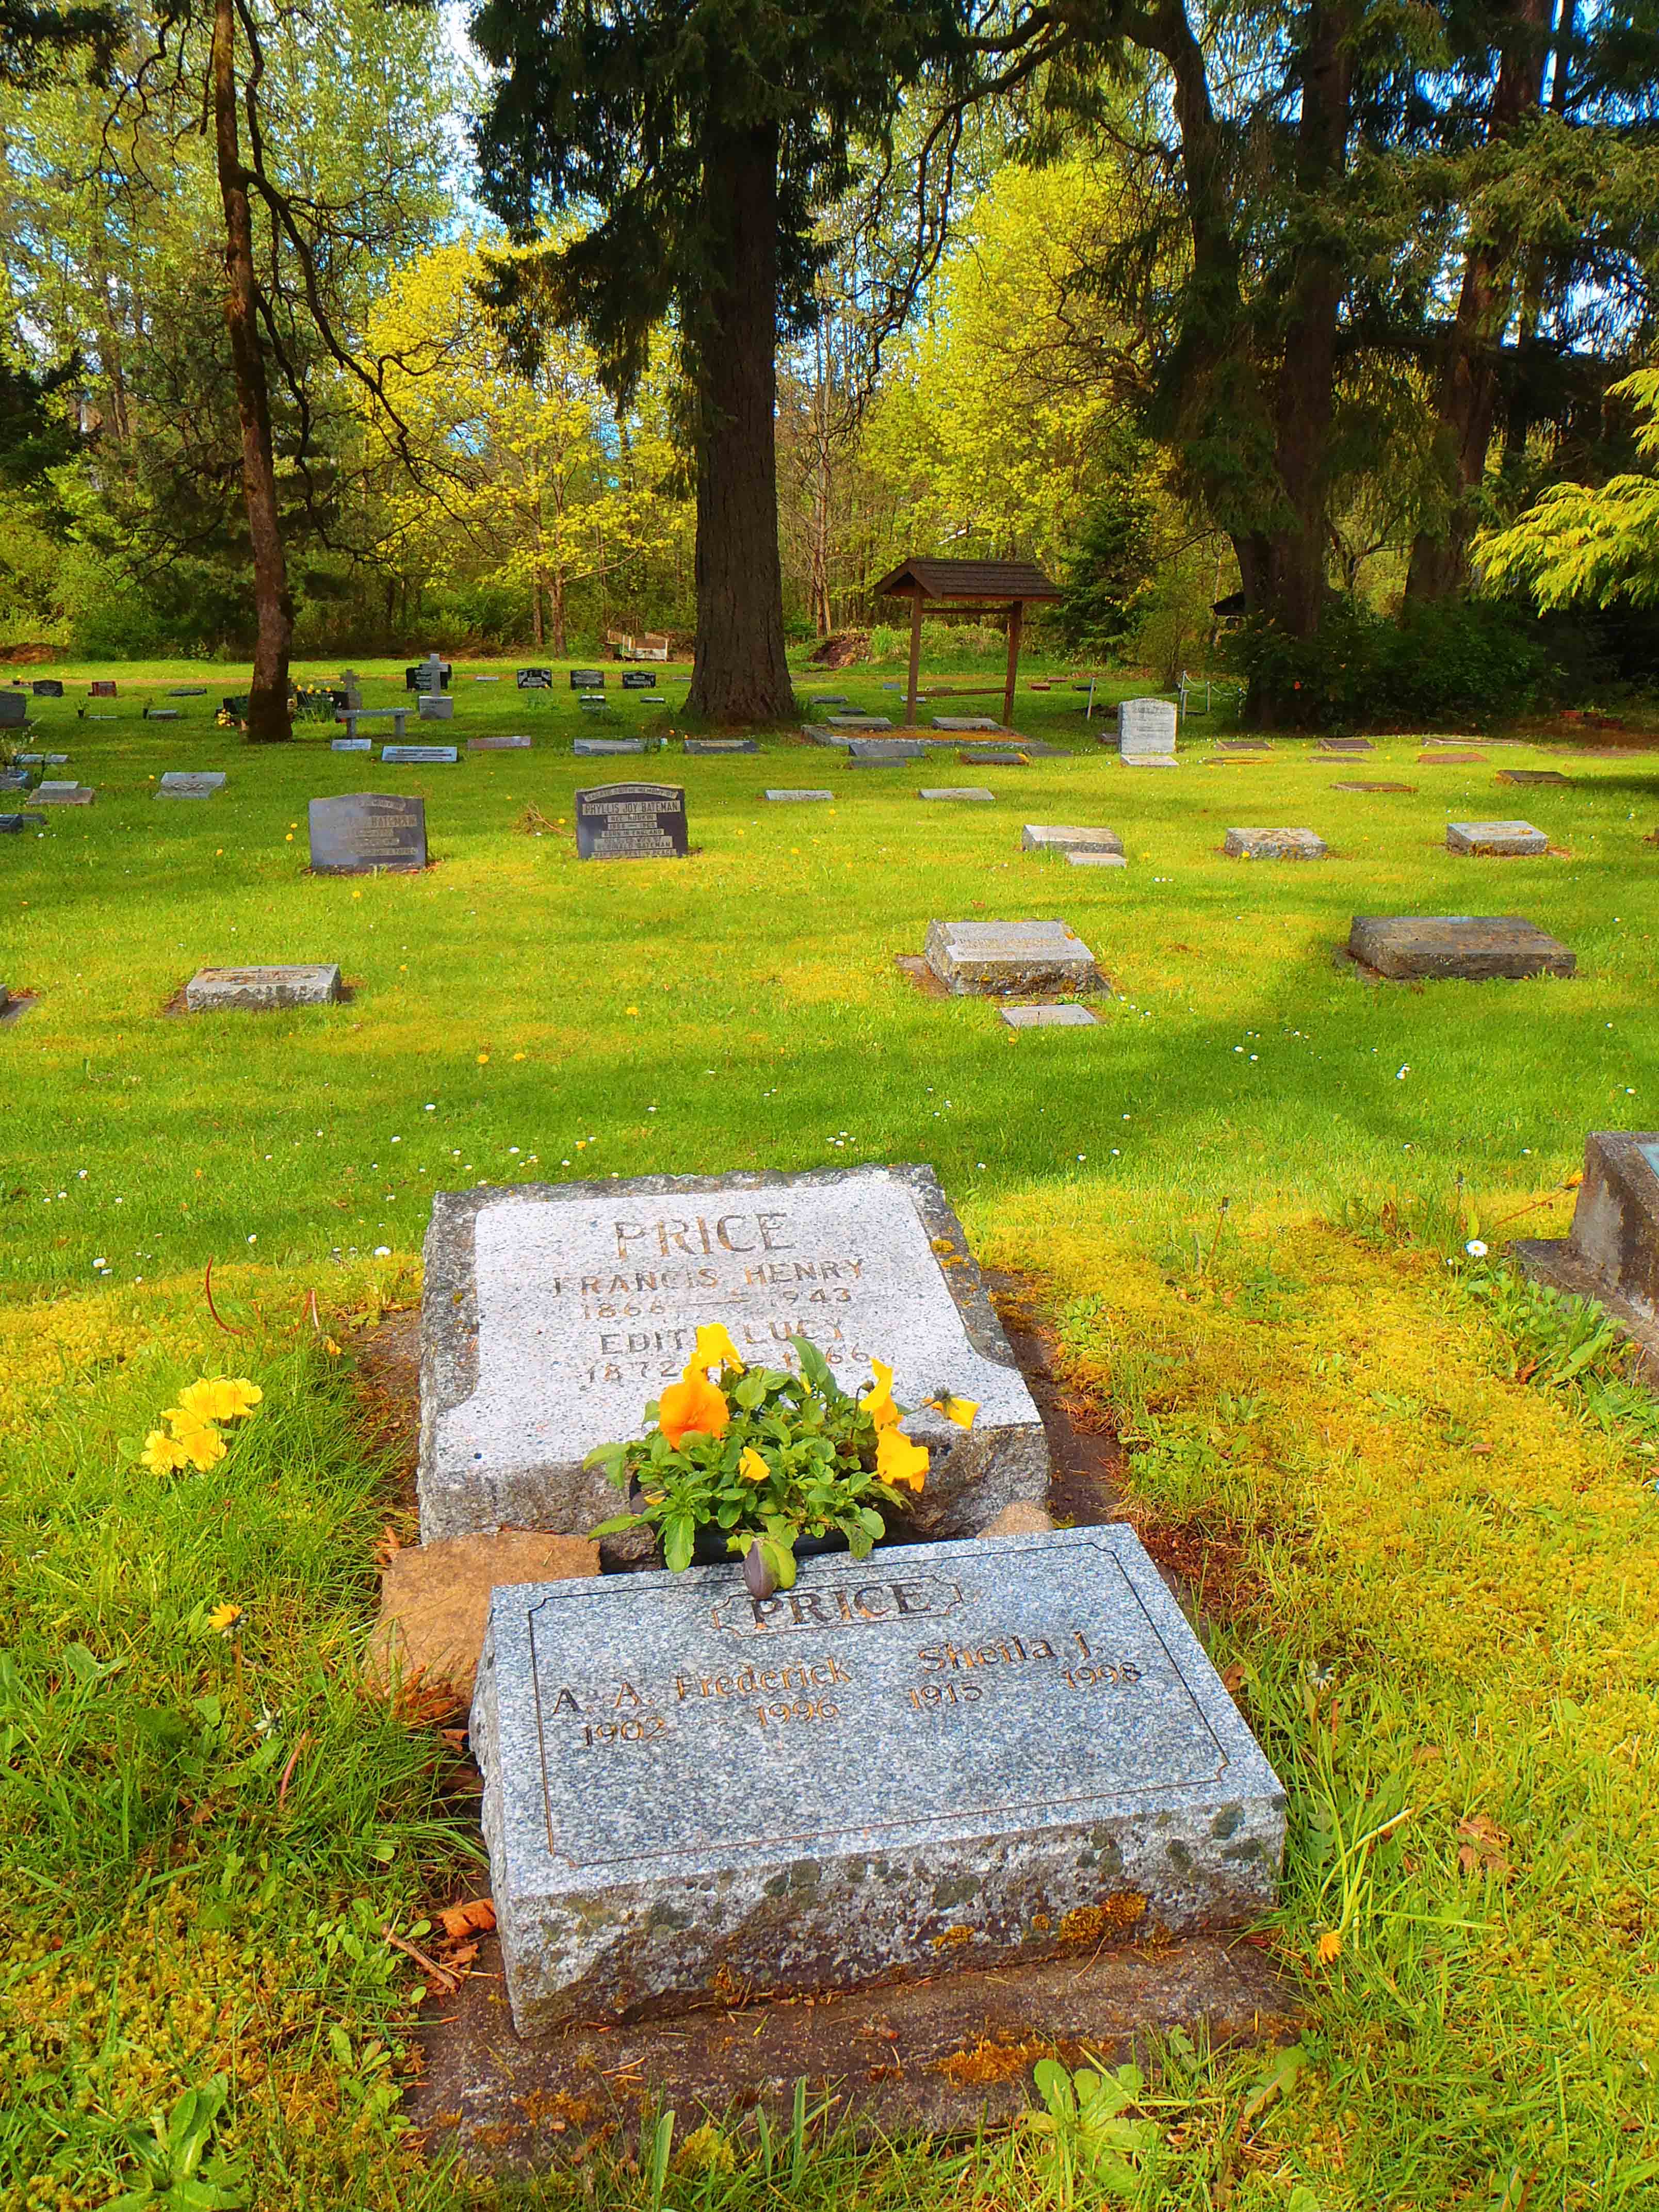 Frank Price grave site